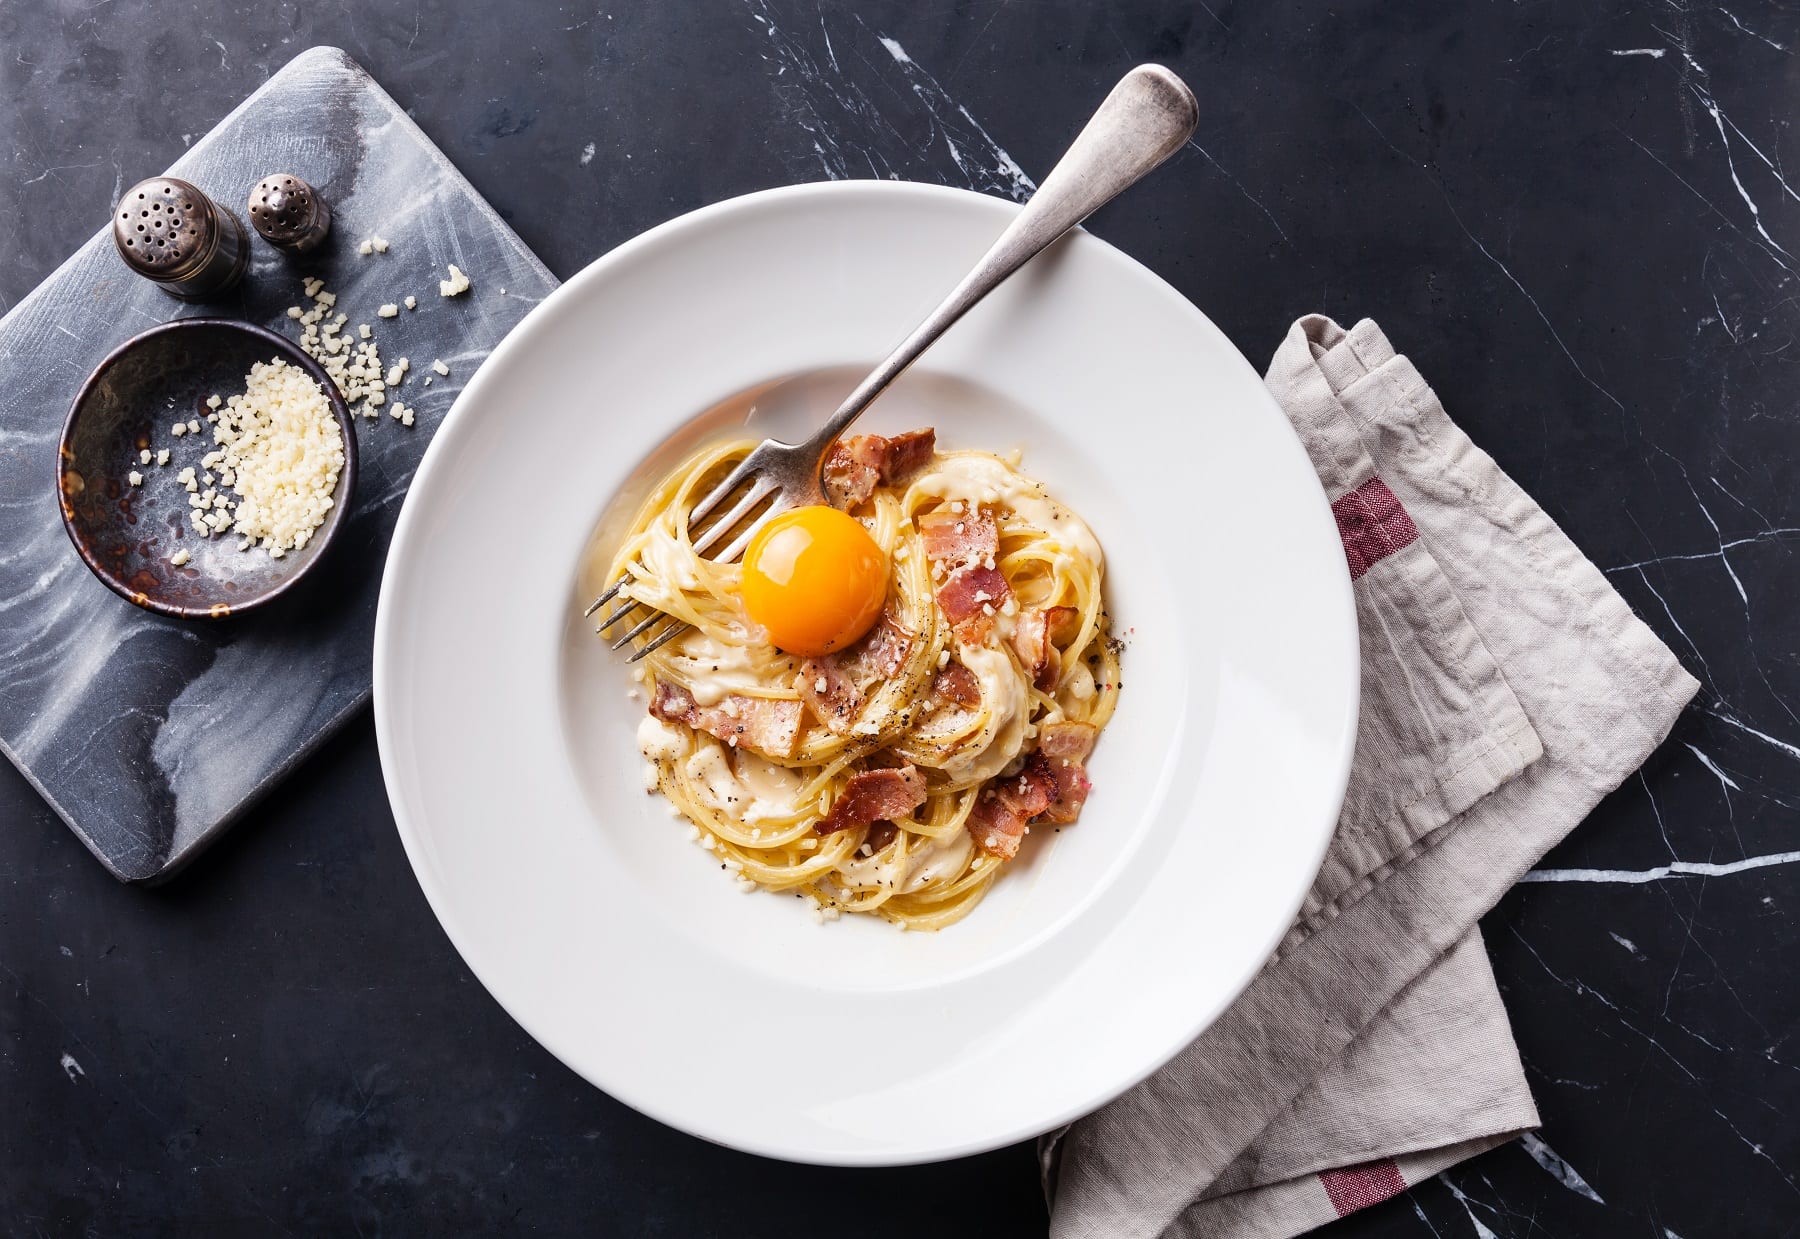 Cucina povera: Wie Resteverwertung und Einfachheit die italienische Küche formten